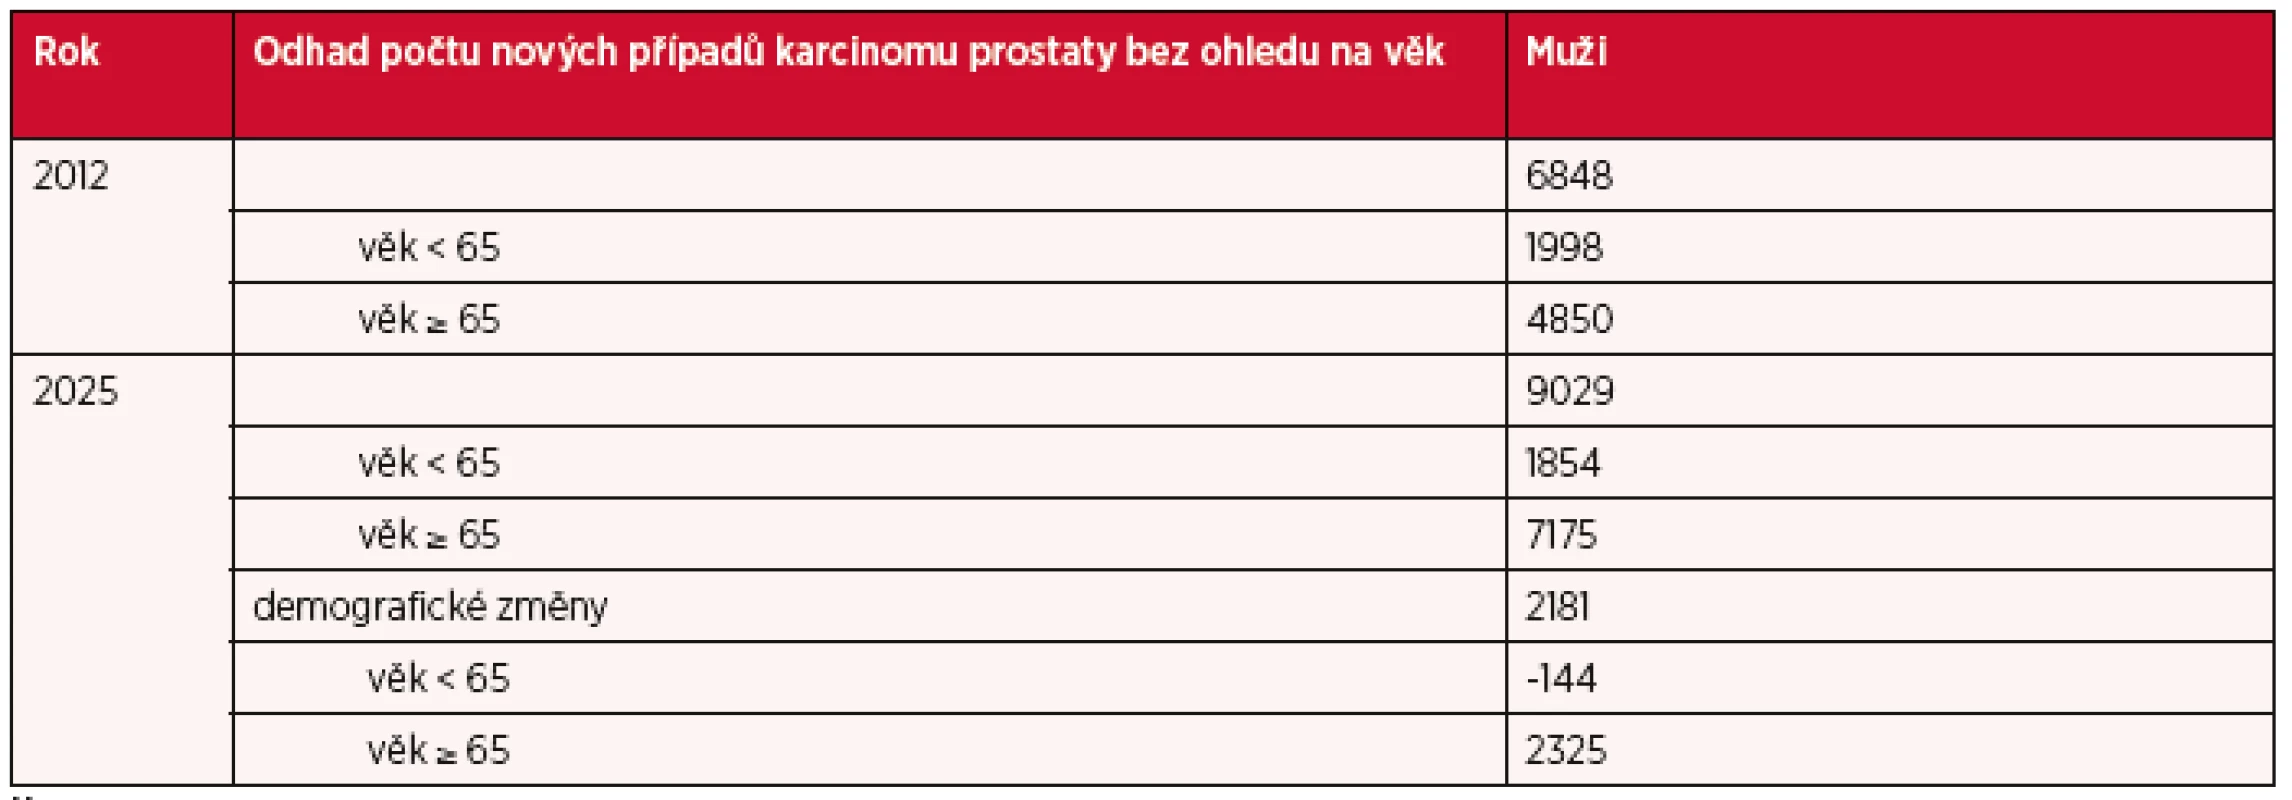 Výskyt karcinomu prostaty v České republice v roce 2012 a predikce nových případů karcinomu prostaty do roku 2025 s ohledem na věk.